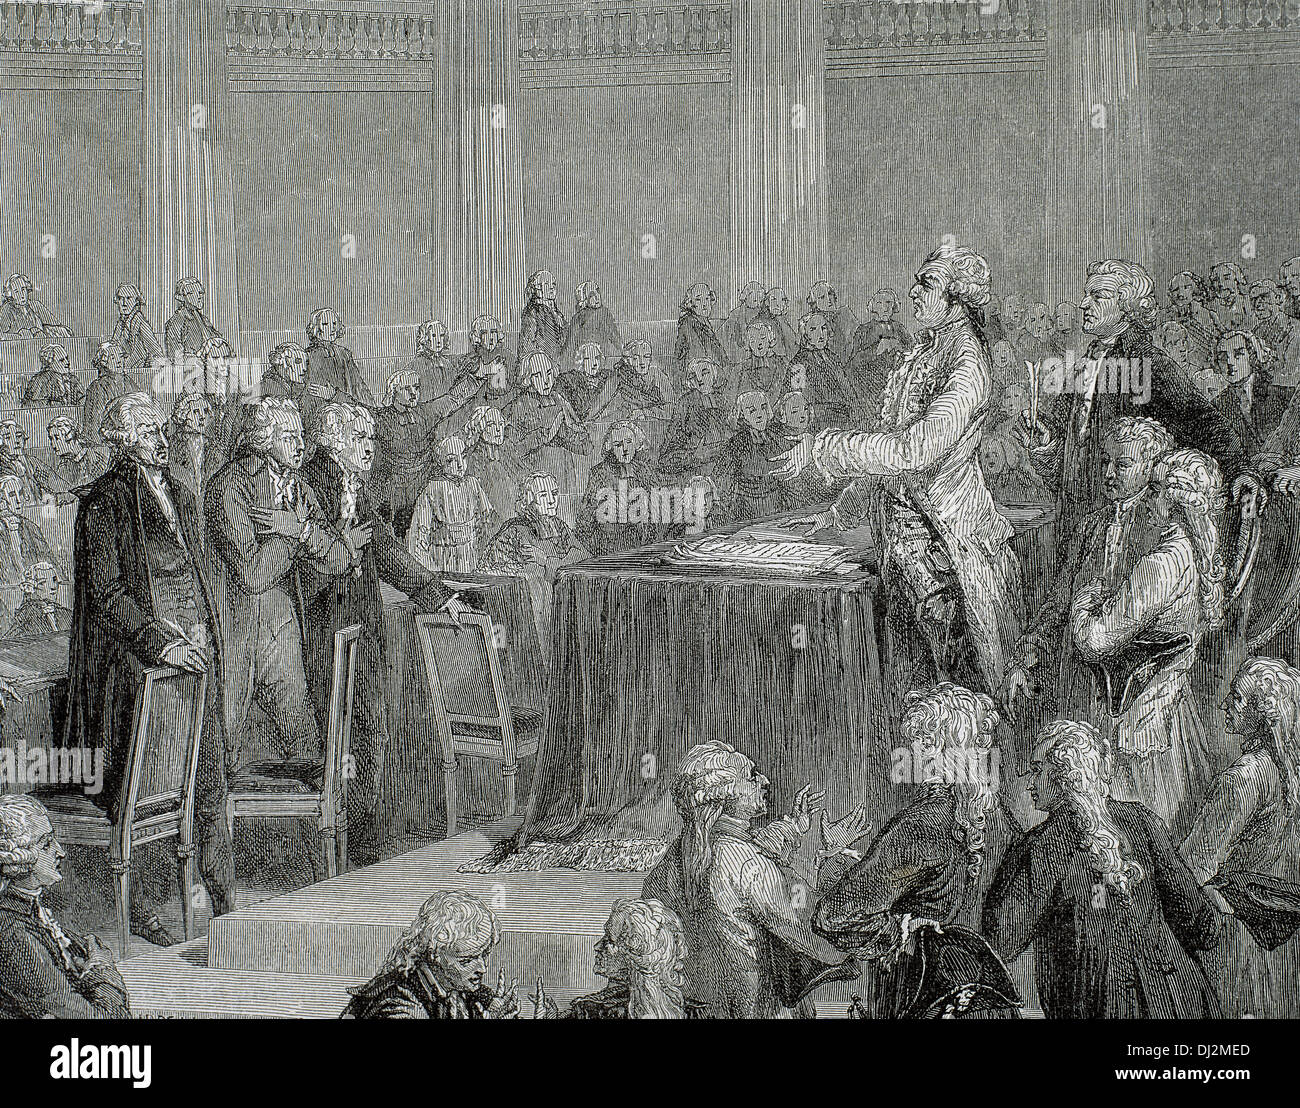 La Révolution française 1787-1799. Louis XVI a été forcé d'adopter la Constitution de 1791 par l'Assemblée nationale. La gravure. Banque D'Images